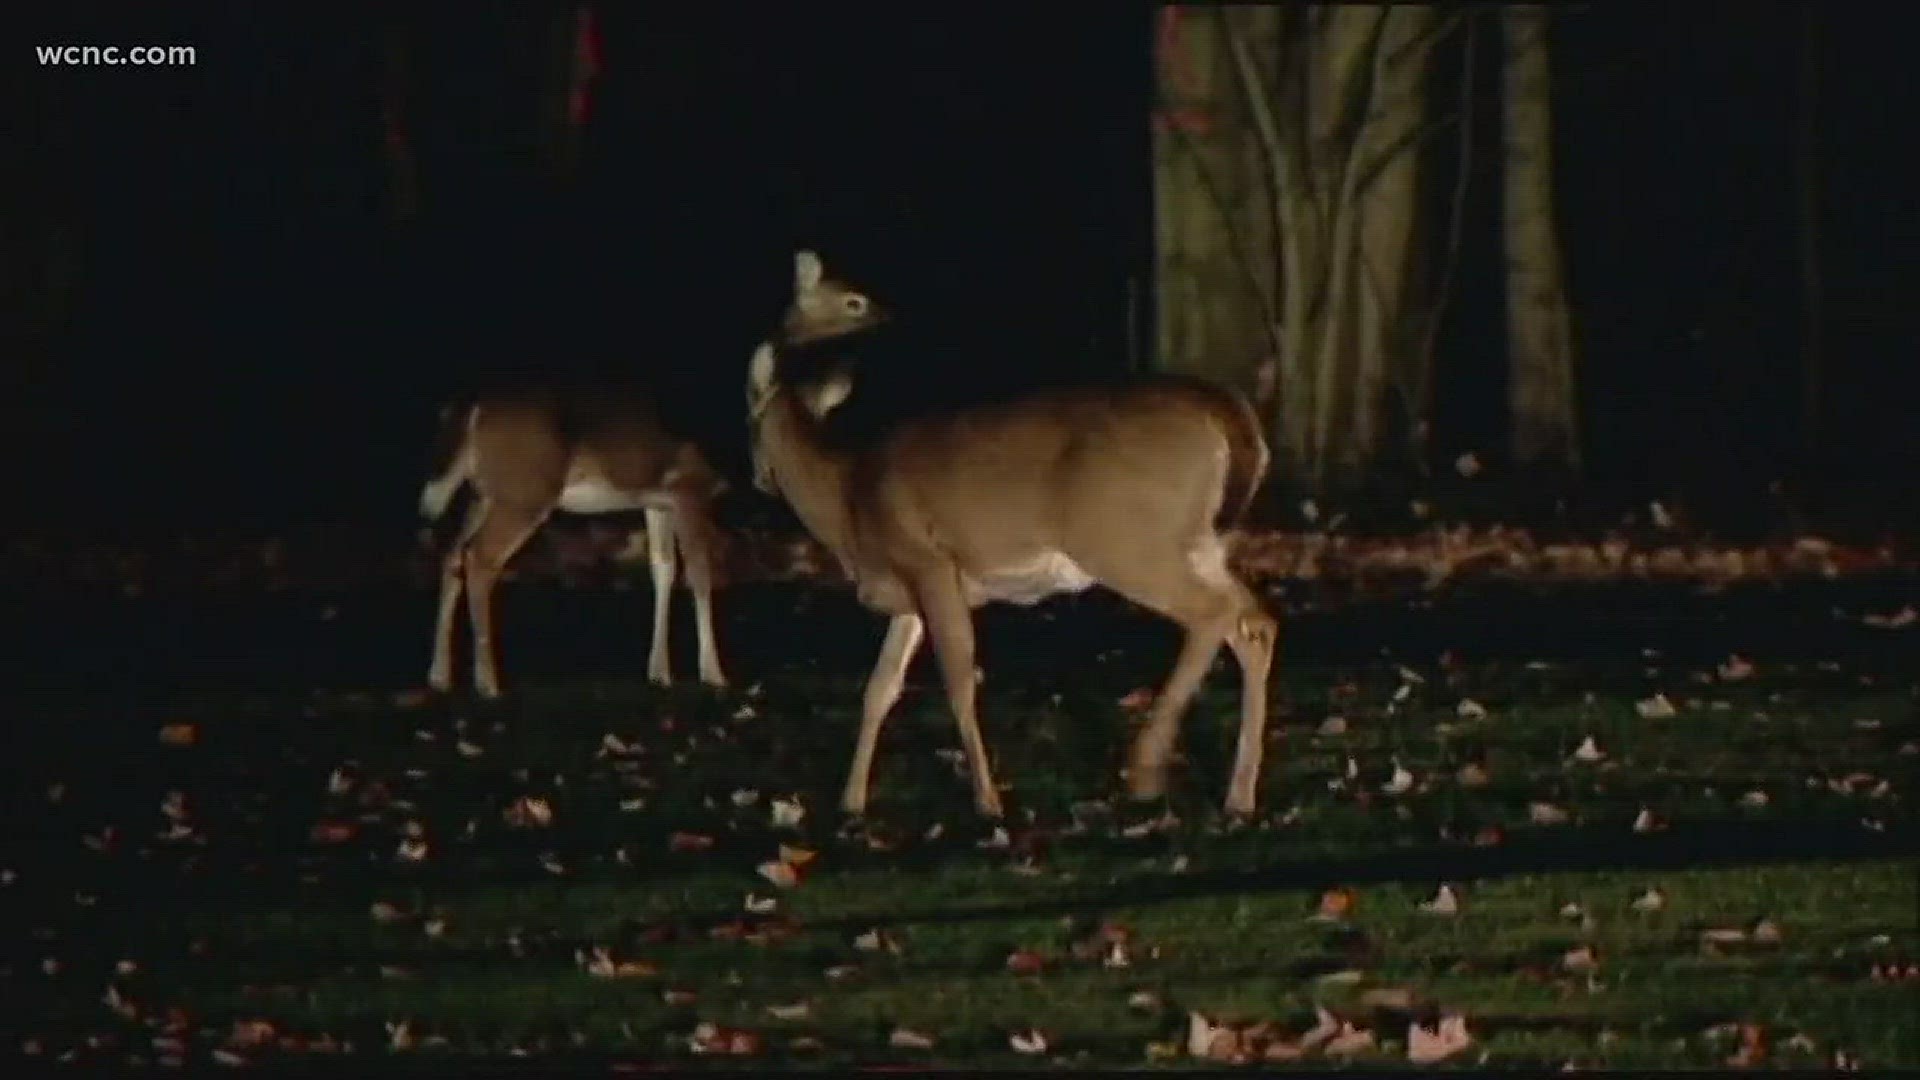 Urban deer hunting worries local homeowners 